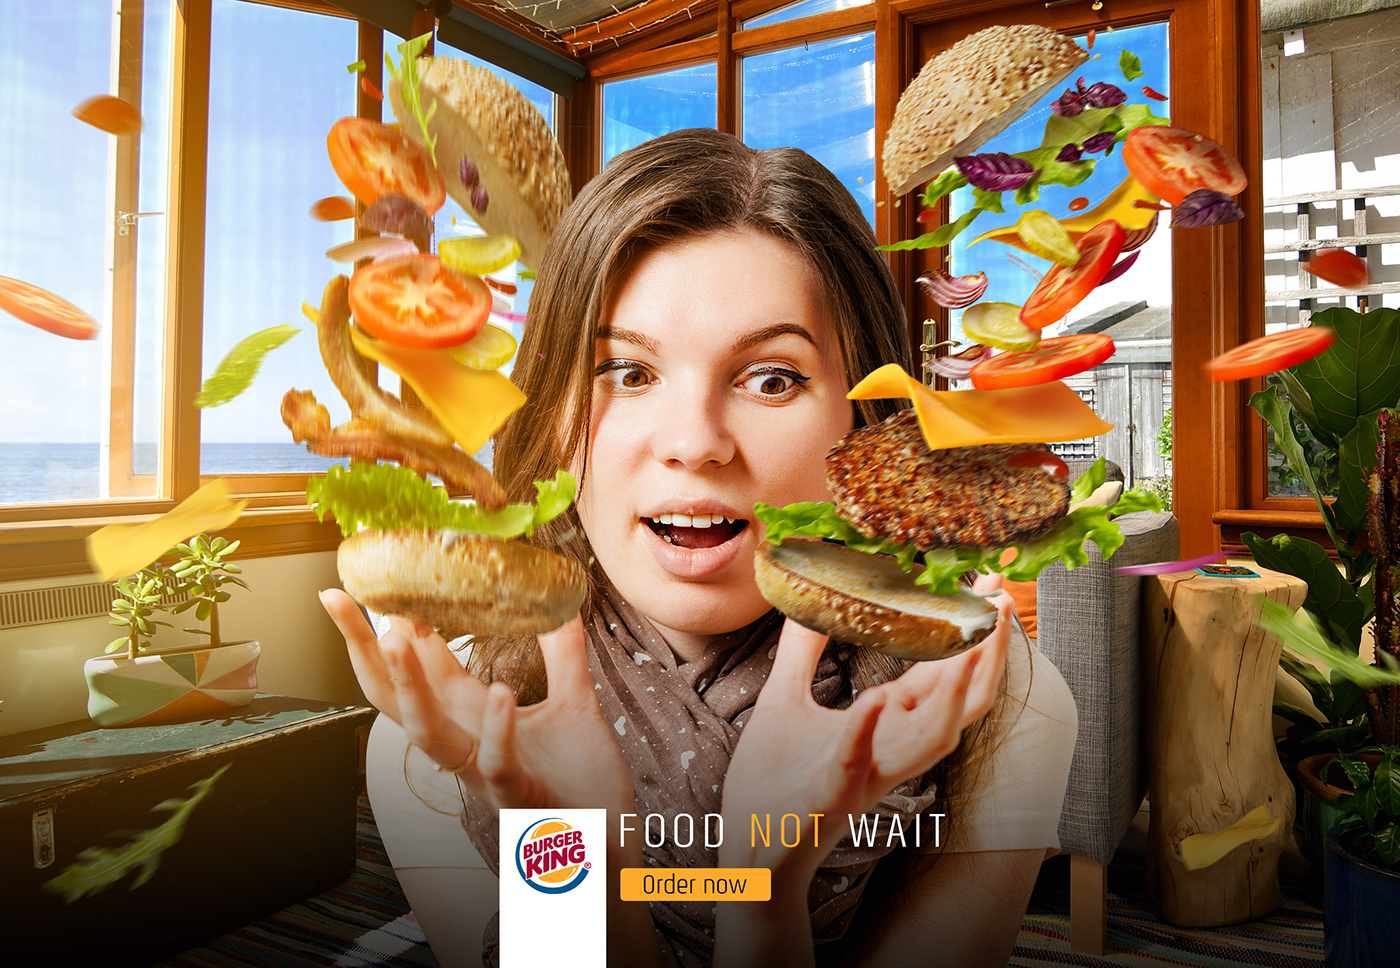 Food  logo burger social media social ads media